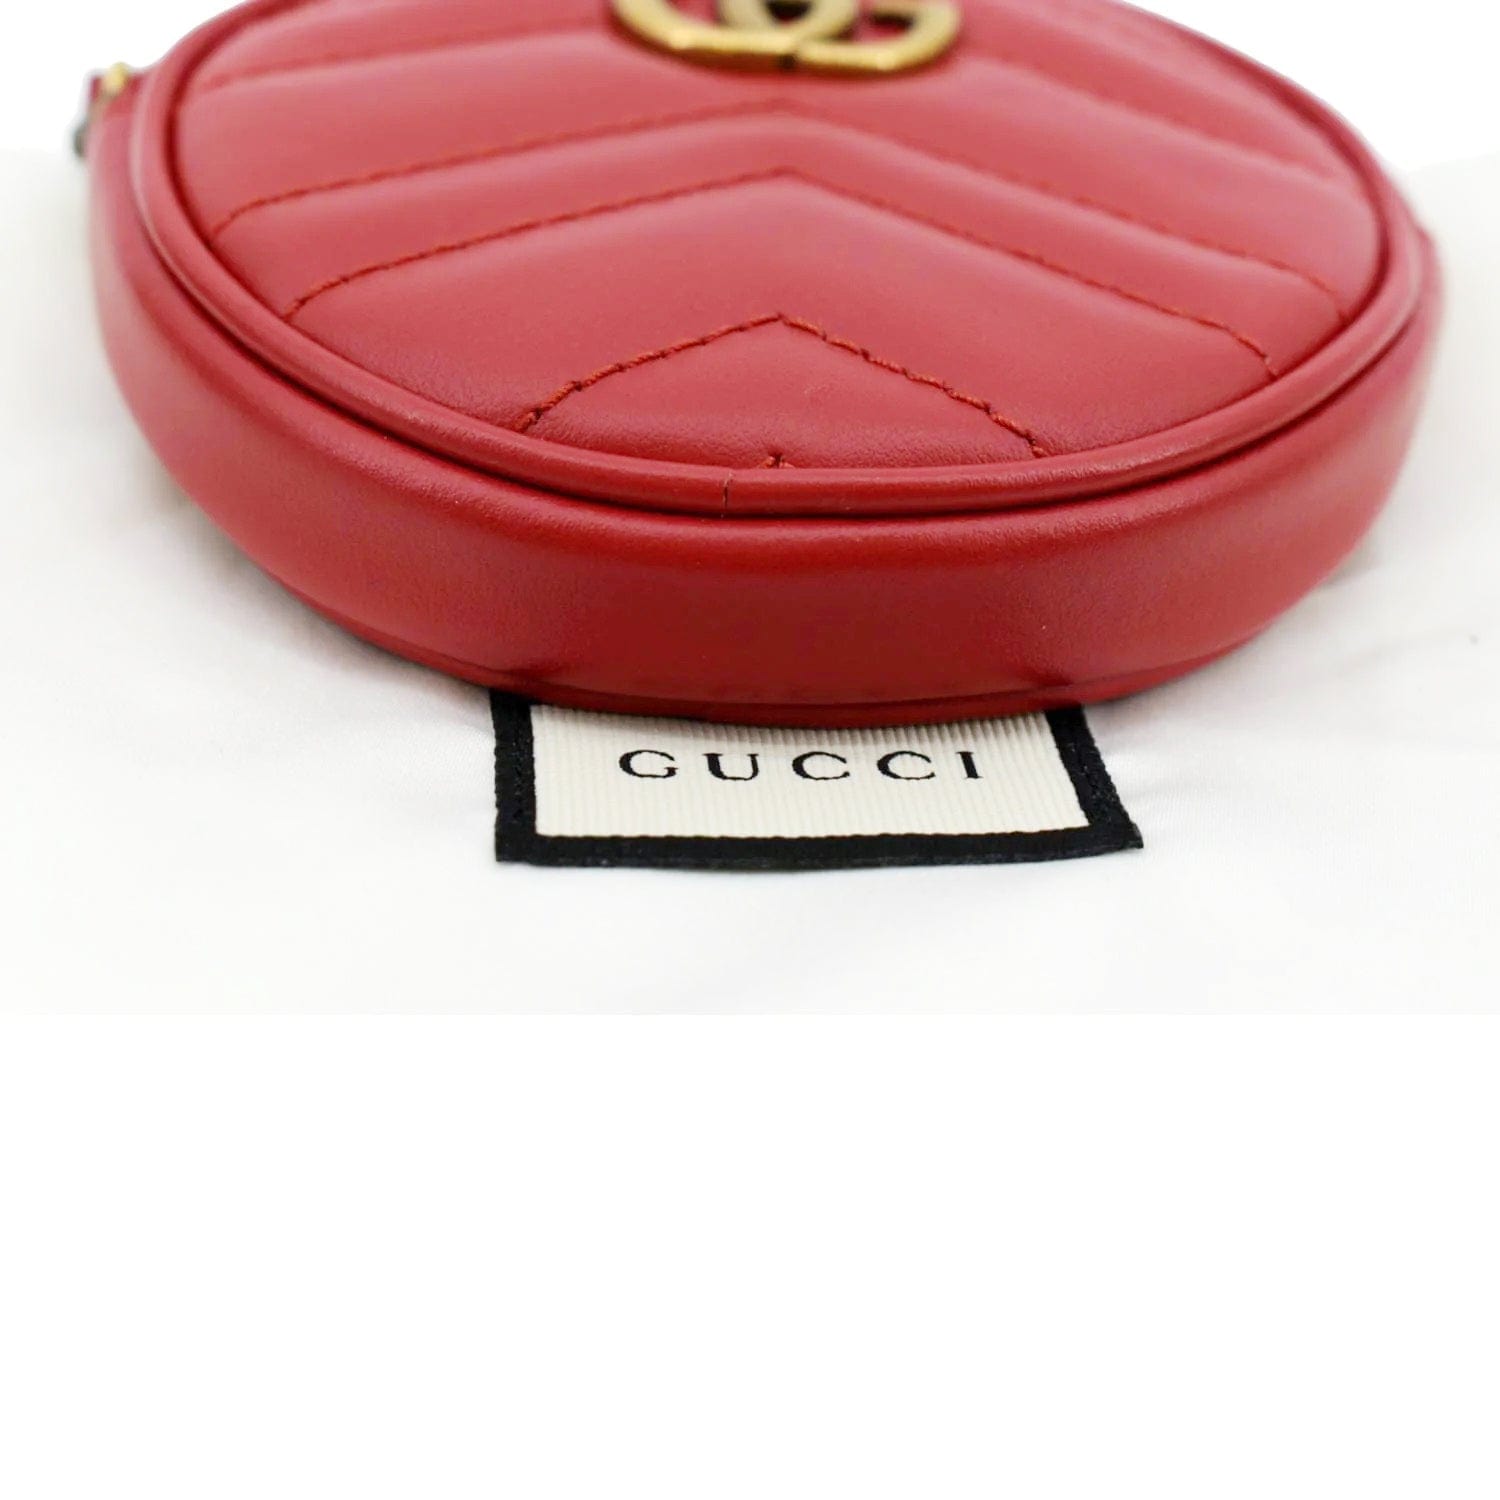 Gucci, Bags, Small Gucci Coin Purse